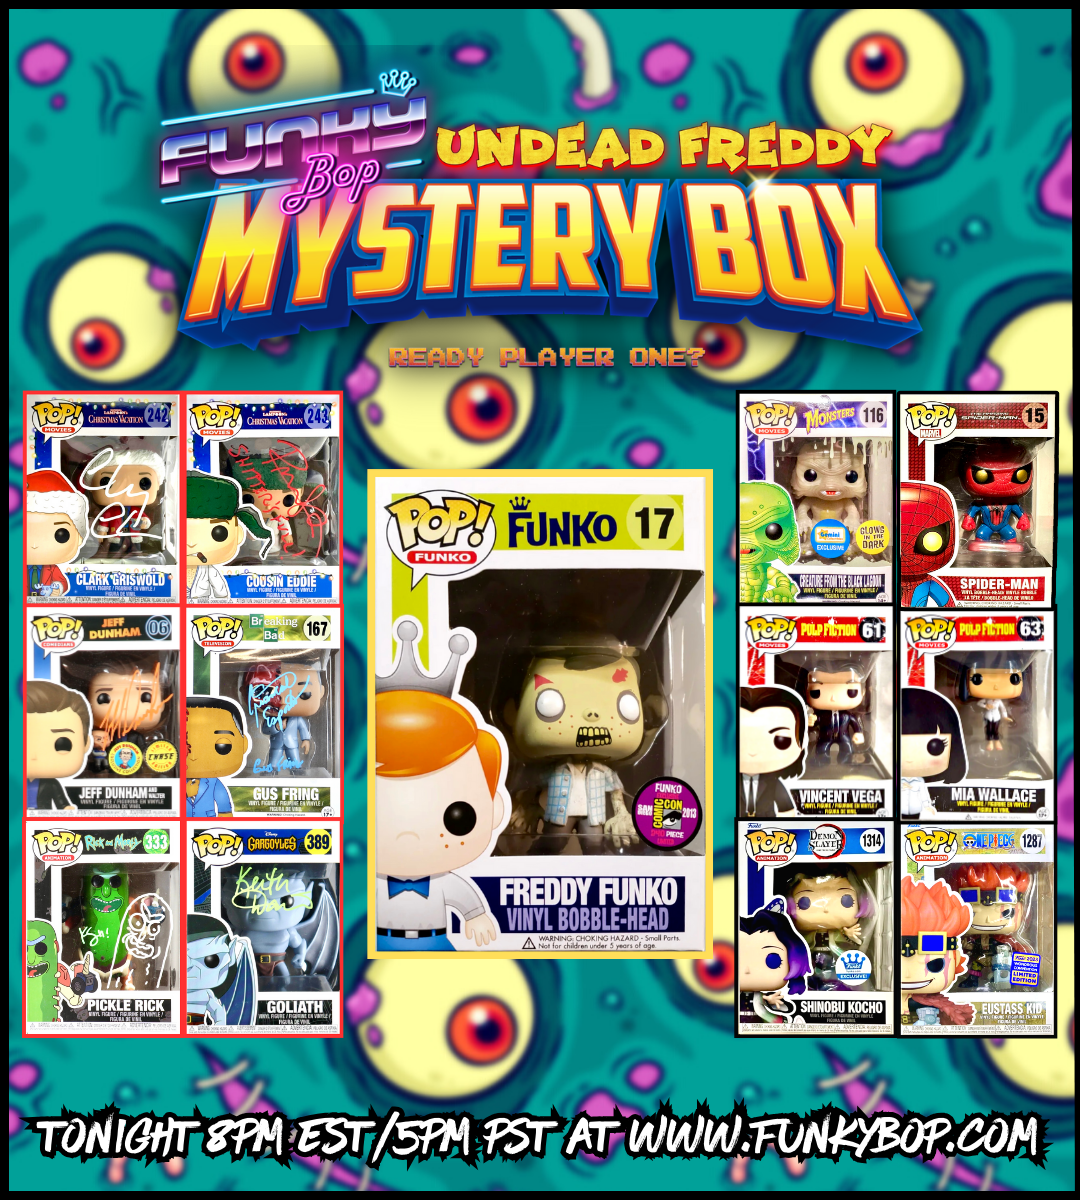 Funky Bop UNDEAD FREDDY Mystery Box - 1.5